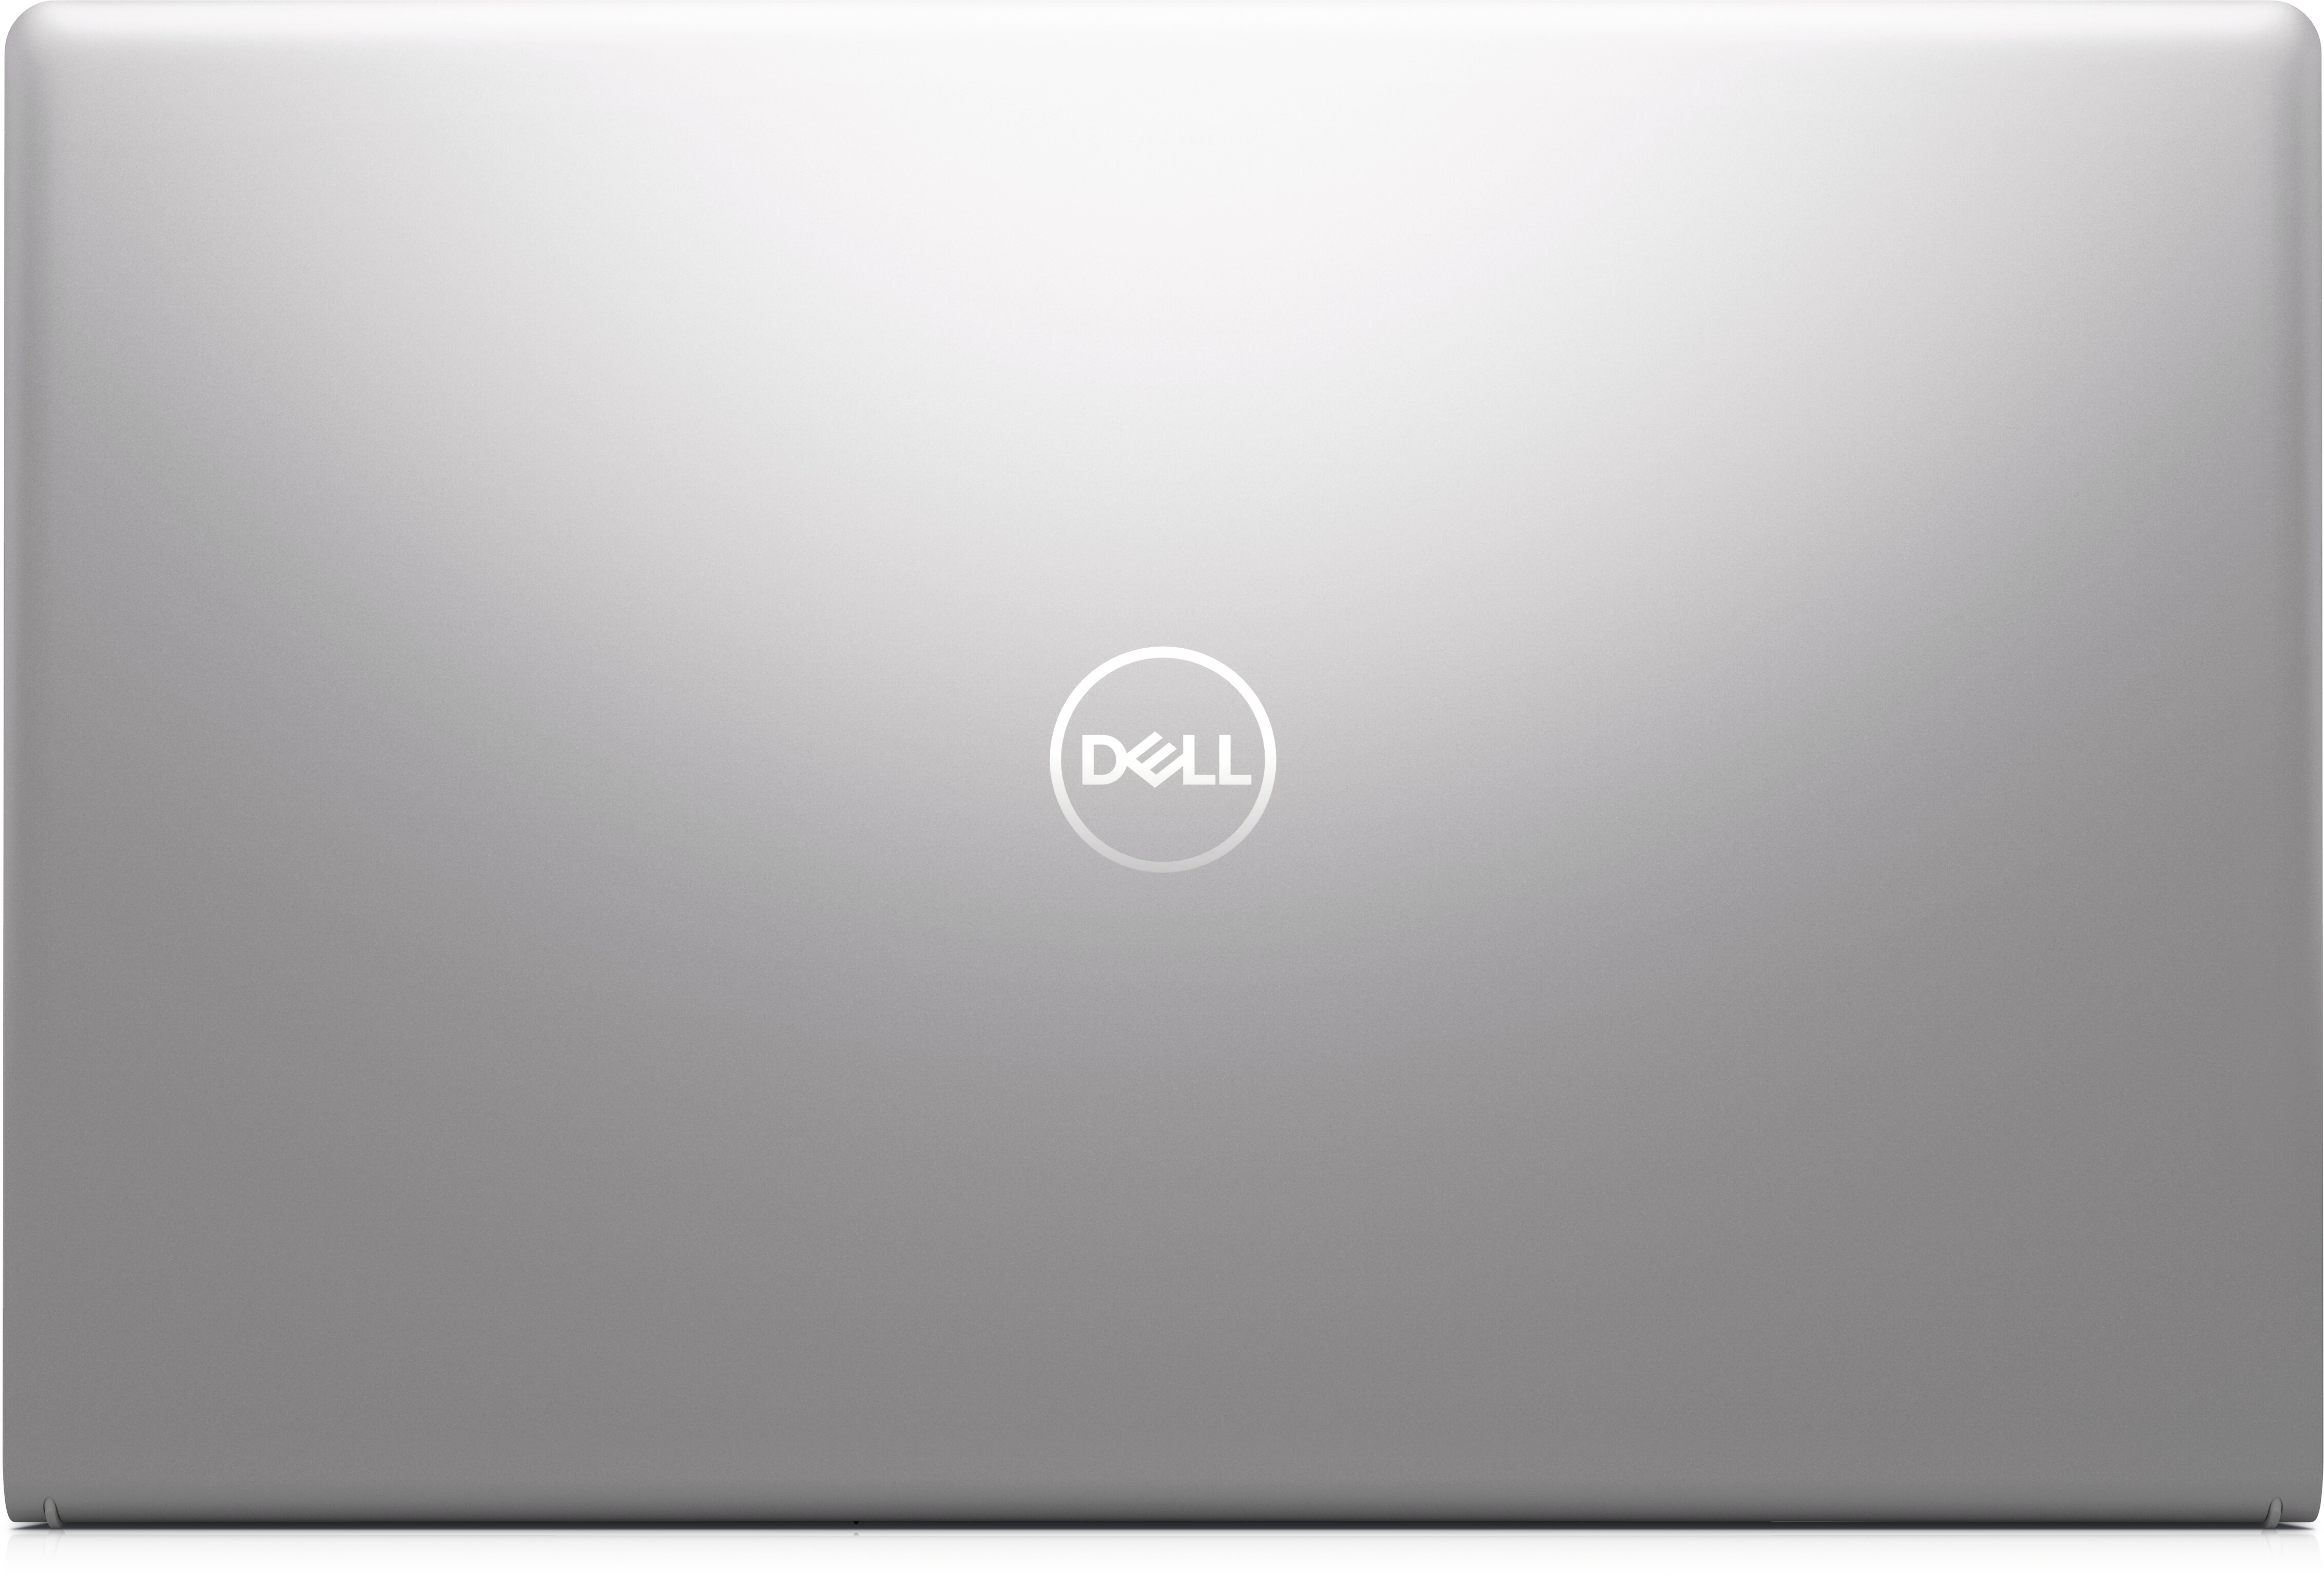 Dell Inspiron 15 インチ 3000 (3511) ノートパソコン | Dell 日本